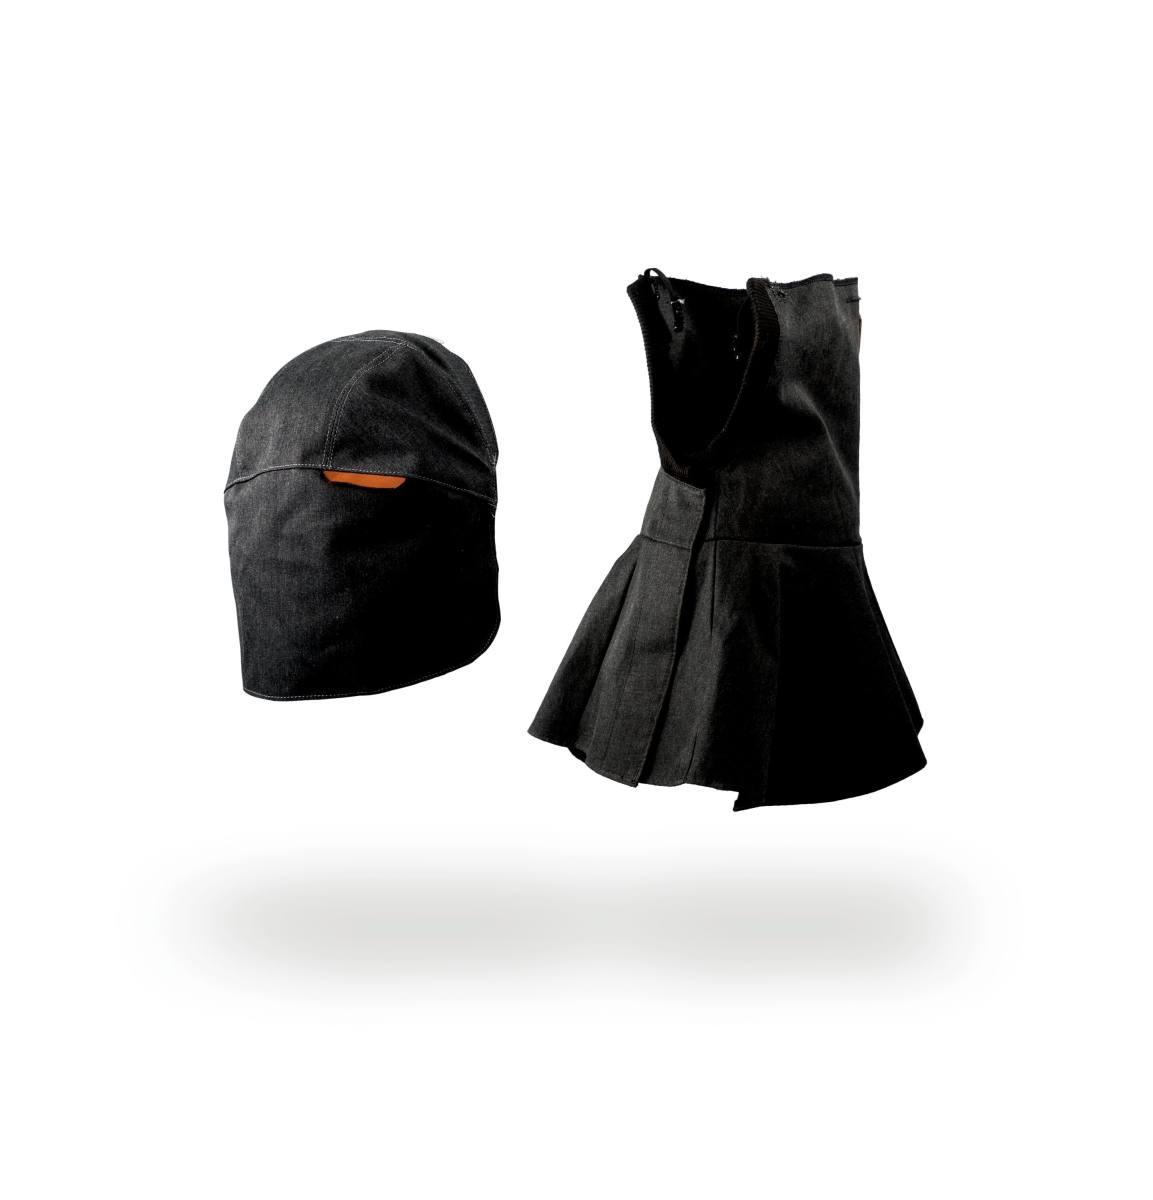 kit di protezione 3M Large (protezione della testa e del collo, copricapo grande) per la maschera per saldatura ad alte prestazioni 3M Speedglas G5-01, H169035